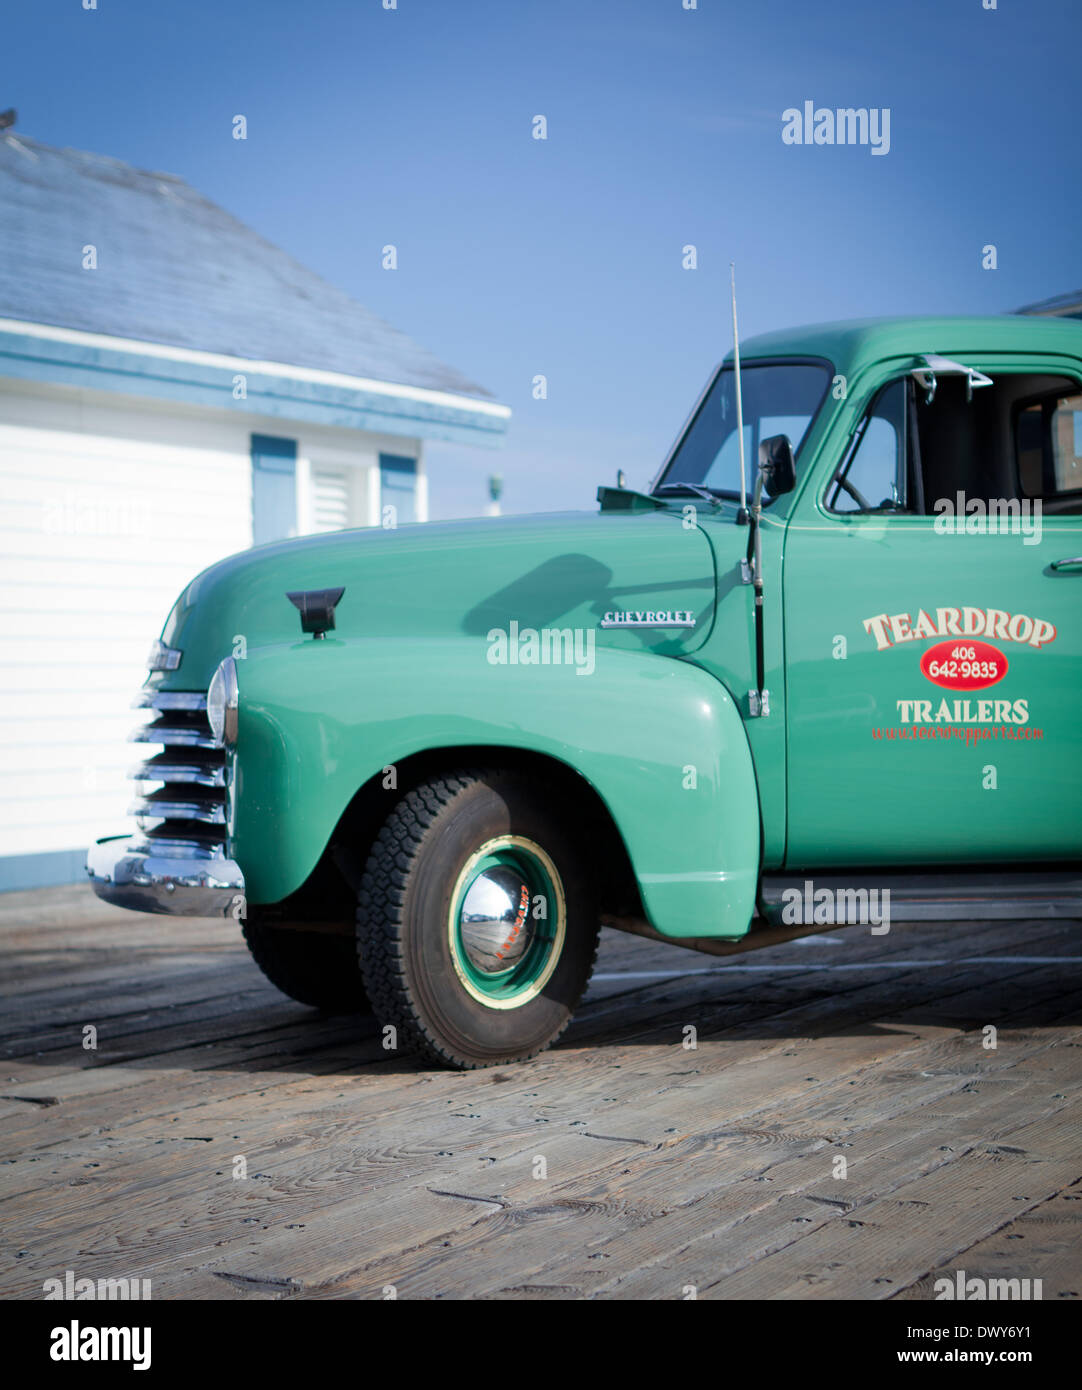 Belle camionnette Chevrolet à partir de ca. En 1950, Crystal Pier pier et un hôtel. - 24 mars 2012. Banque D'Images